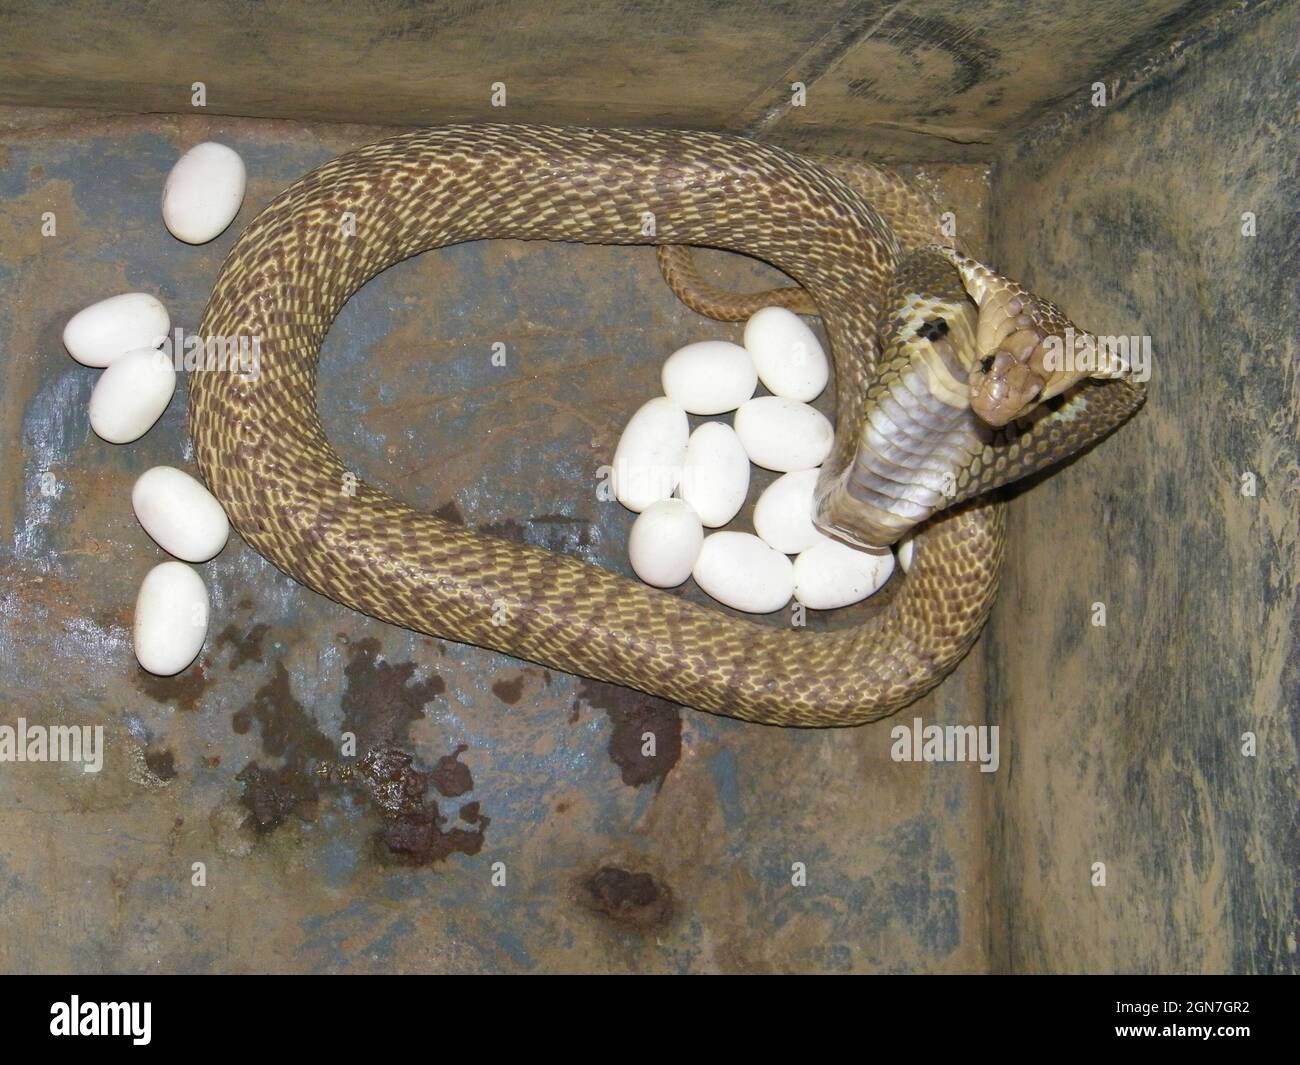 Cobra bewacht seine Eier, Naja naja, Mumbai, Maharashtra, Indien Stockfoto